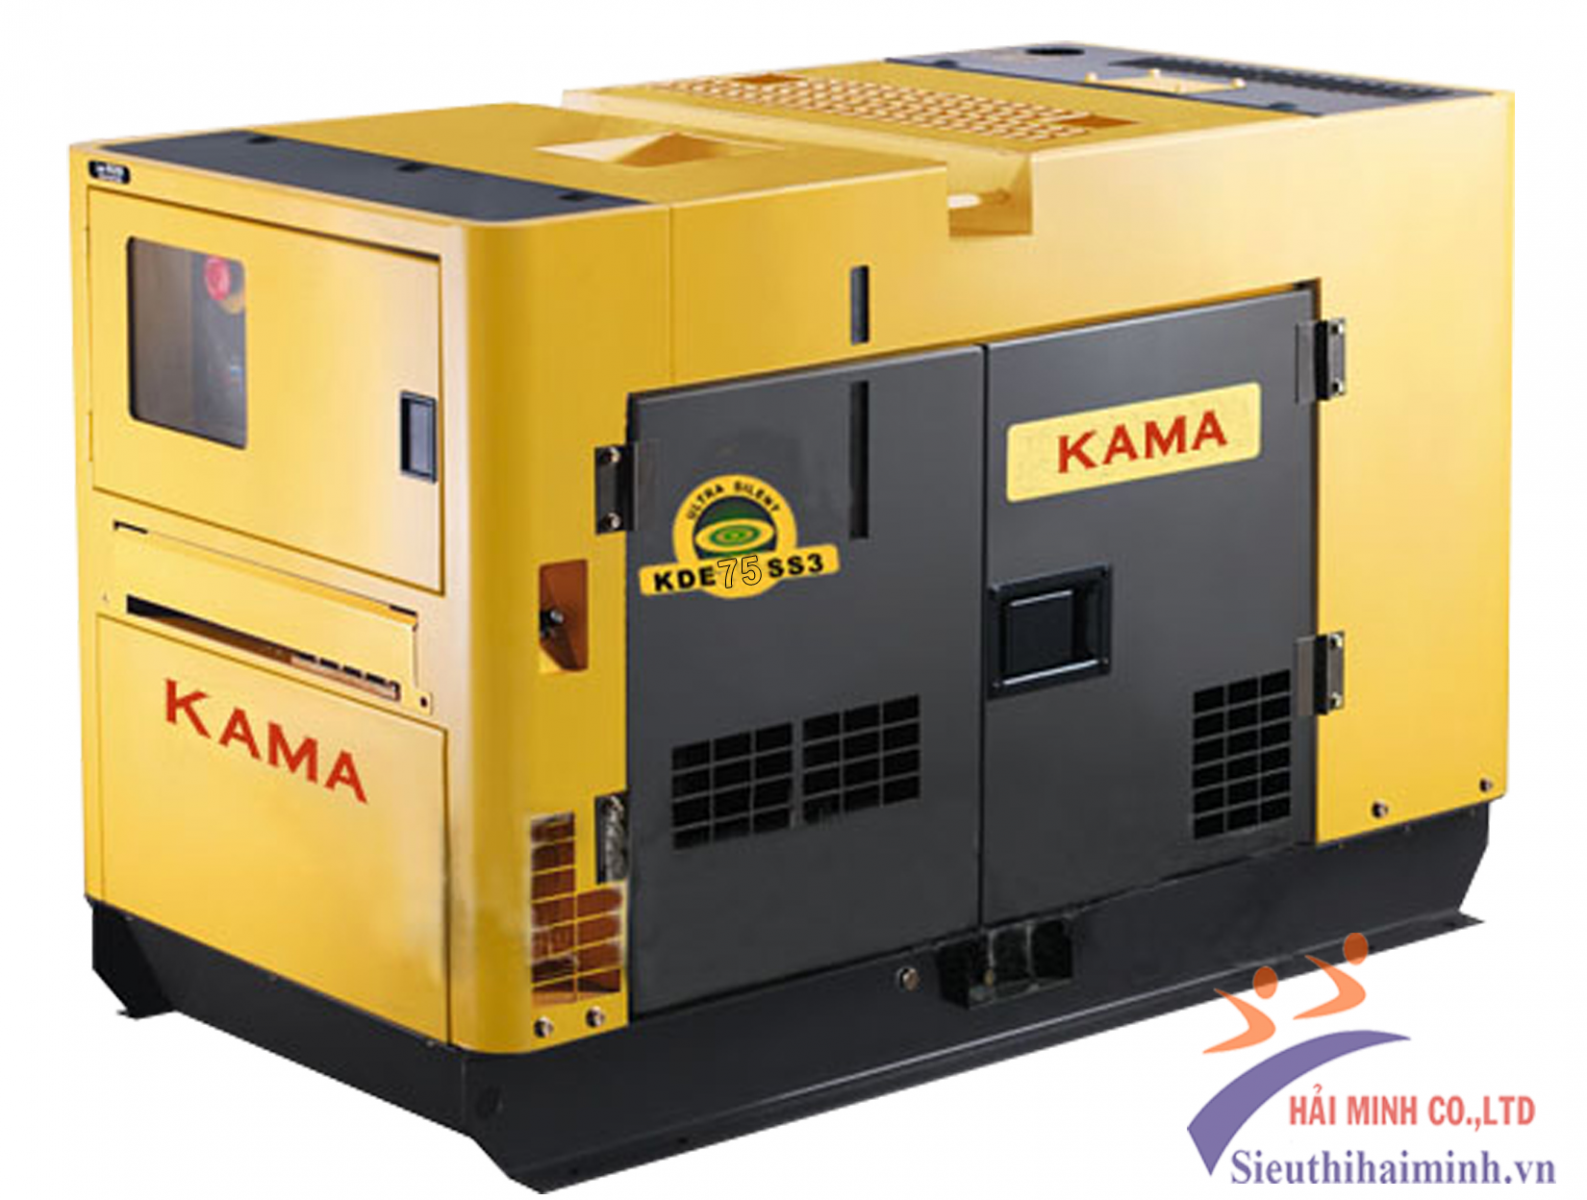 Máy phát điện 3 pha diesel KAMA KDE-30SS3